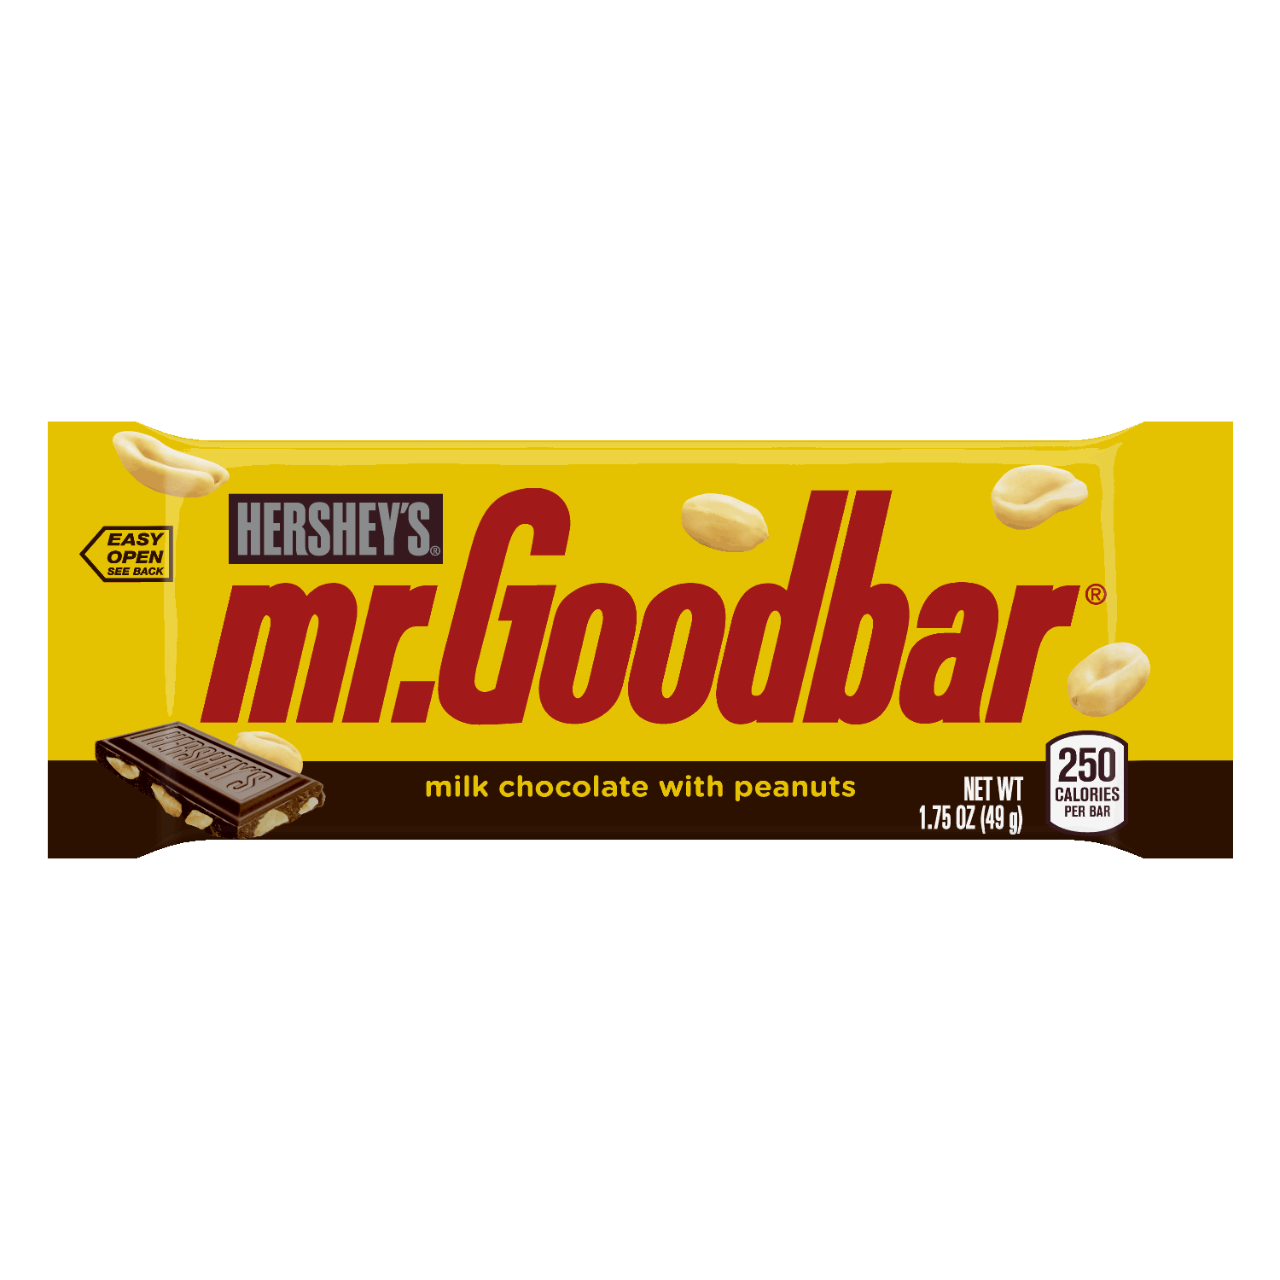 Peanuts clipart peanut mr. Goodbar chocolate wiki fandom